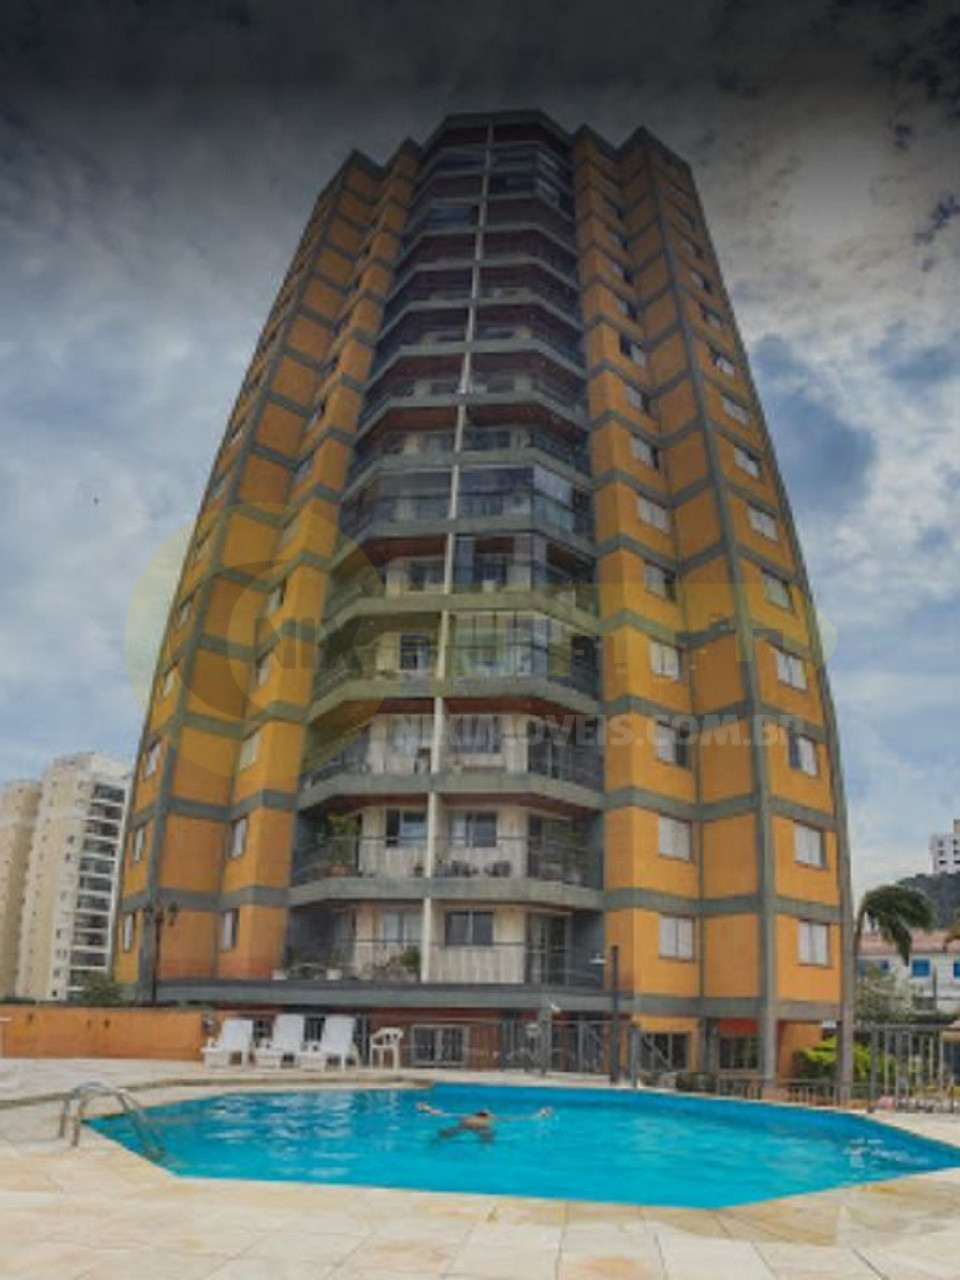 Compra apartamento Butanta USP Metro Sao Paulo Brasil. No melhor da Vila Gomes, 90m² 3 quartos, suíte, 3 vagas, andar alto. Vista panorâmica lindissíma!